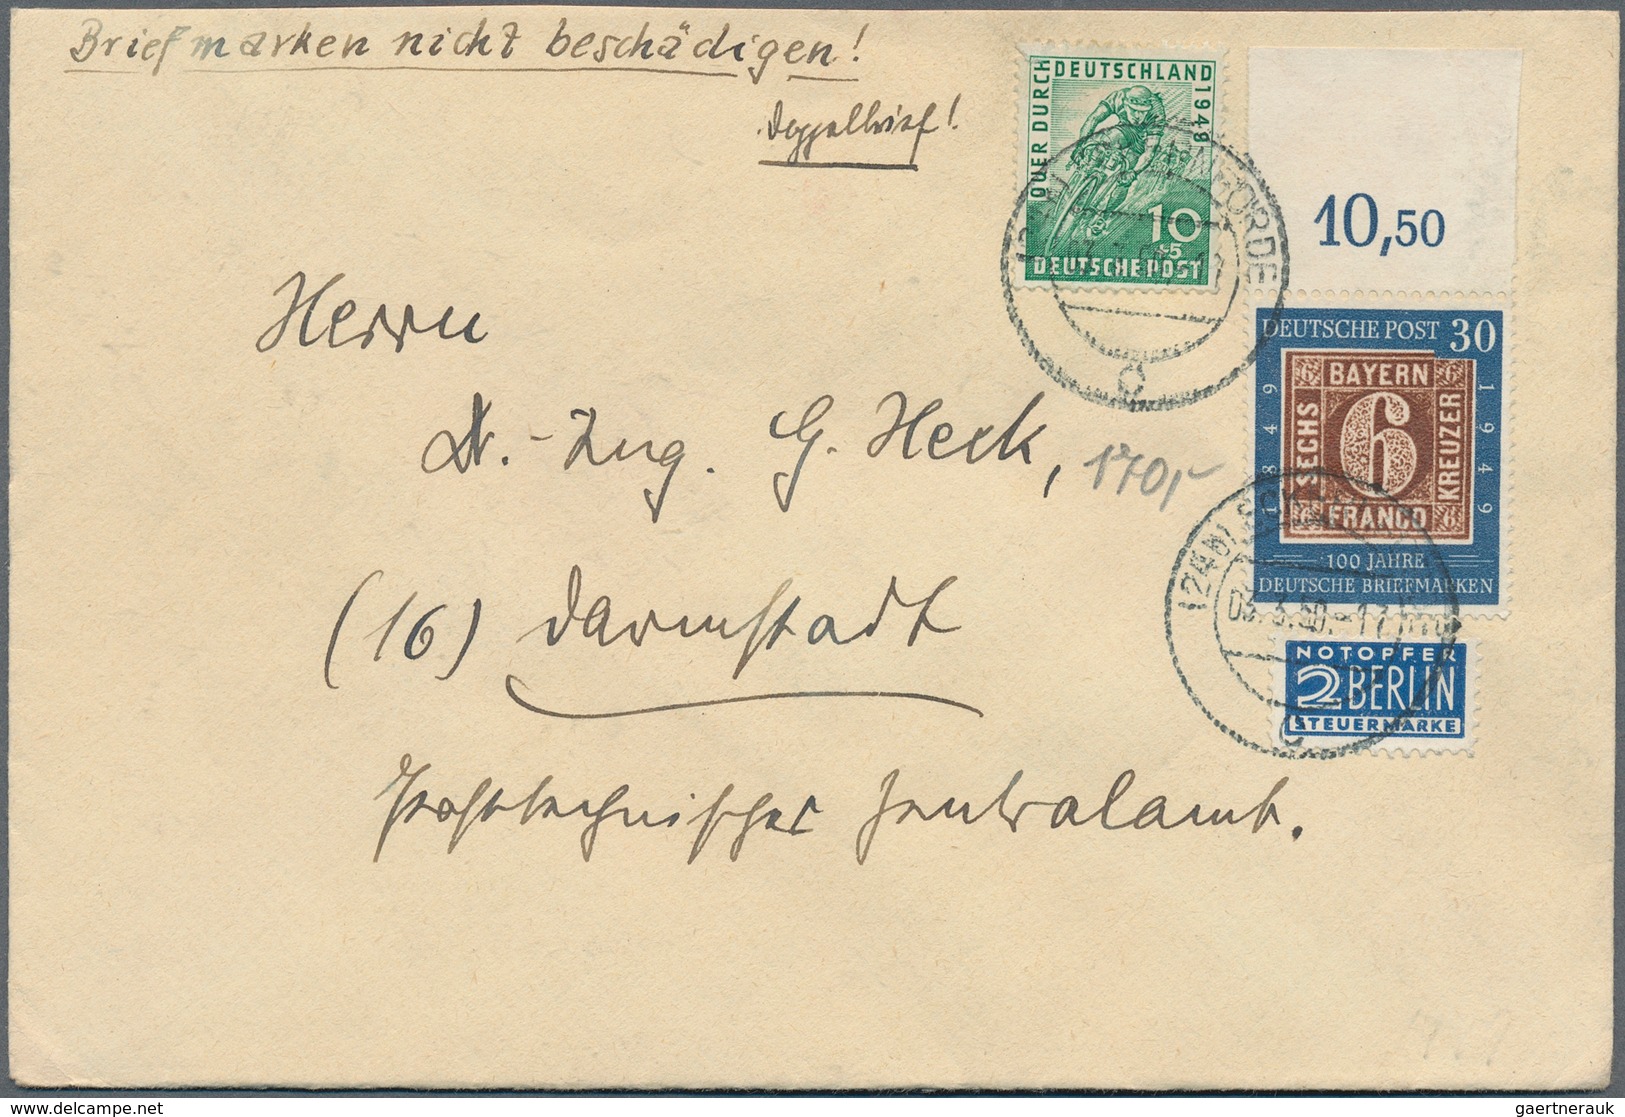 32690 Bundesrepublik Deutschland: 1949/1960, nette Partie von über 50 Briefen und Karten mit meist Sonderm